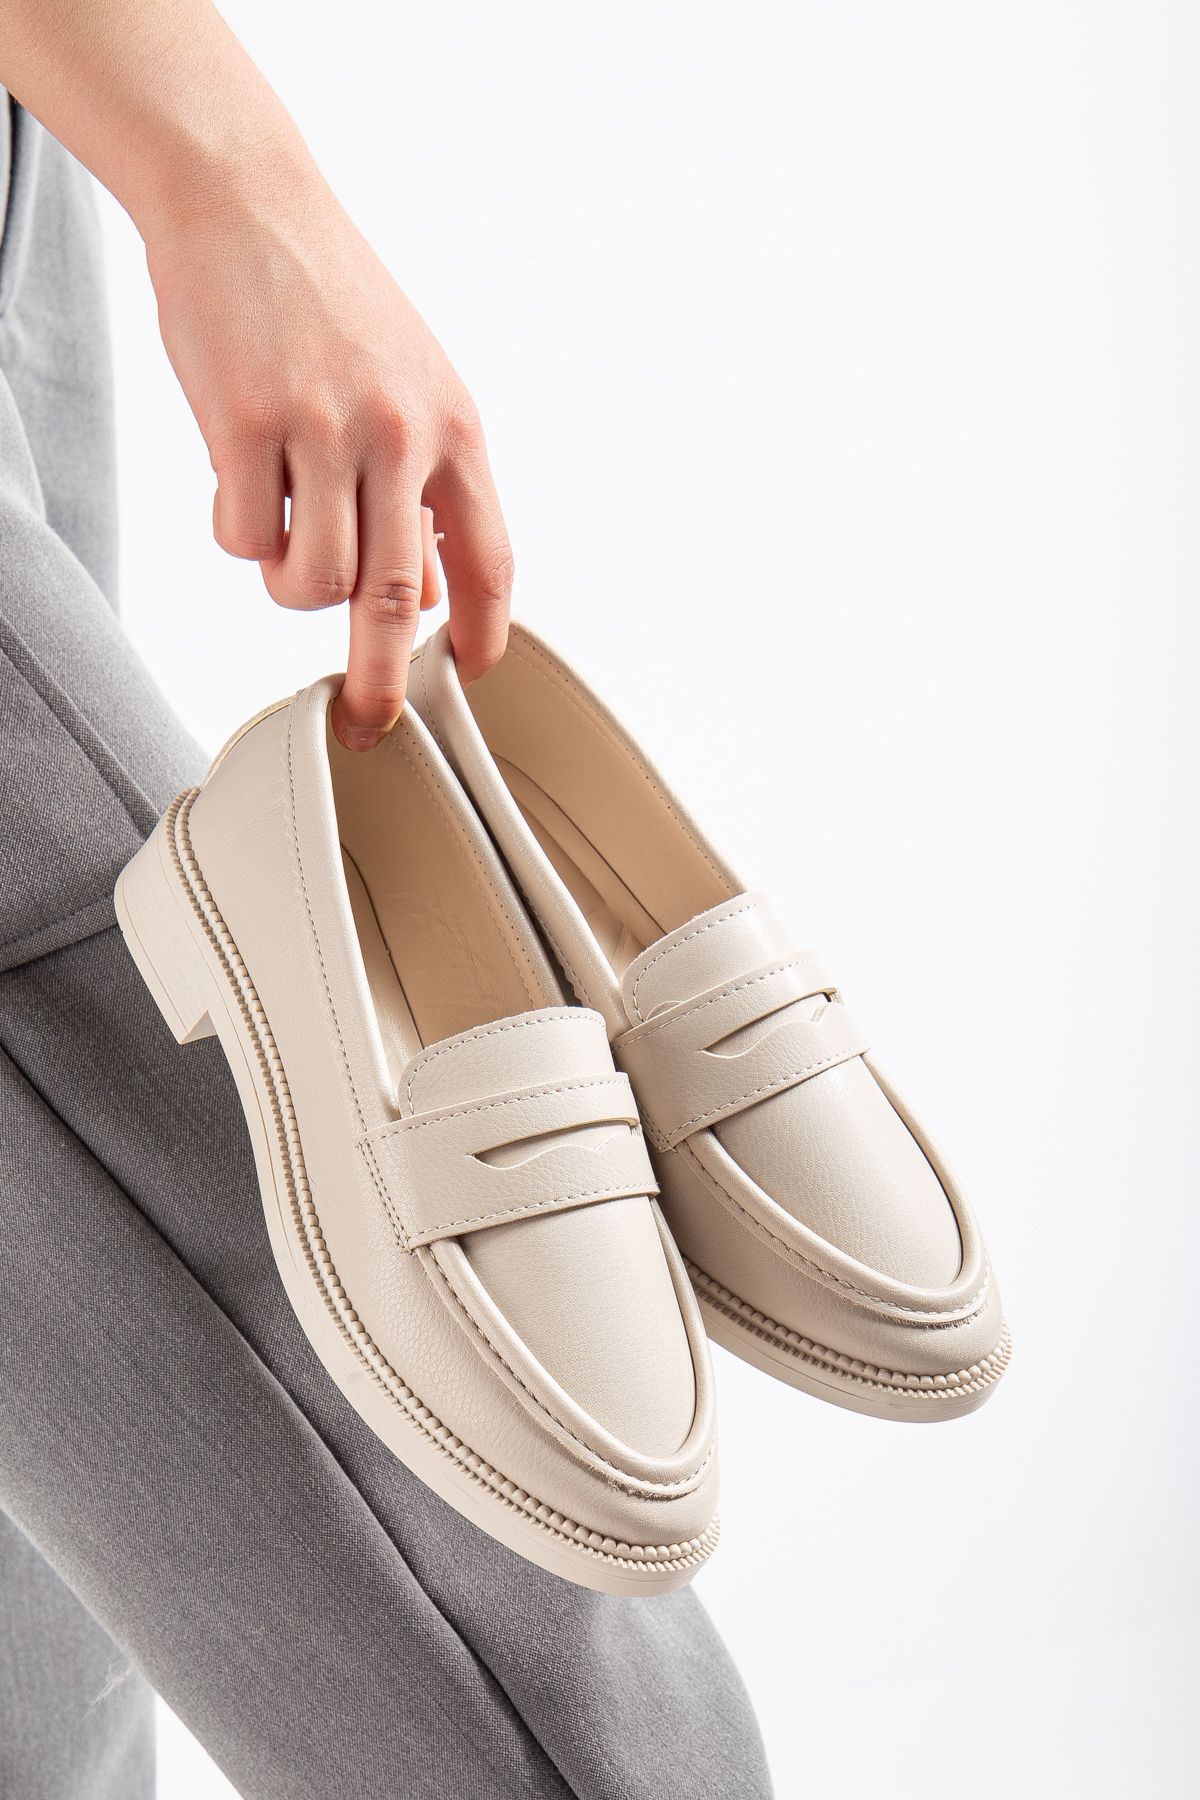 MYDERİN SHOES Casual-Loafer Ten Cilt Rahat Günlük Giyilebilecek Kadın Babet Ayakkabı